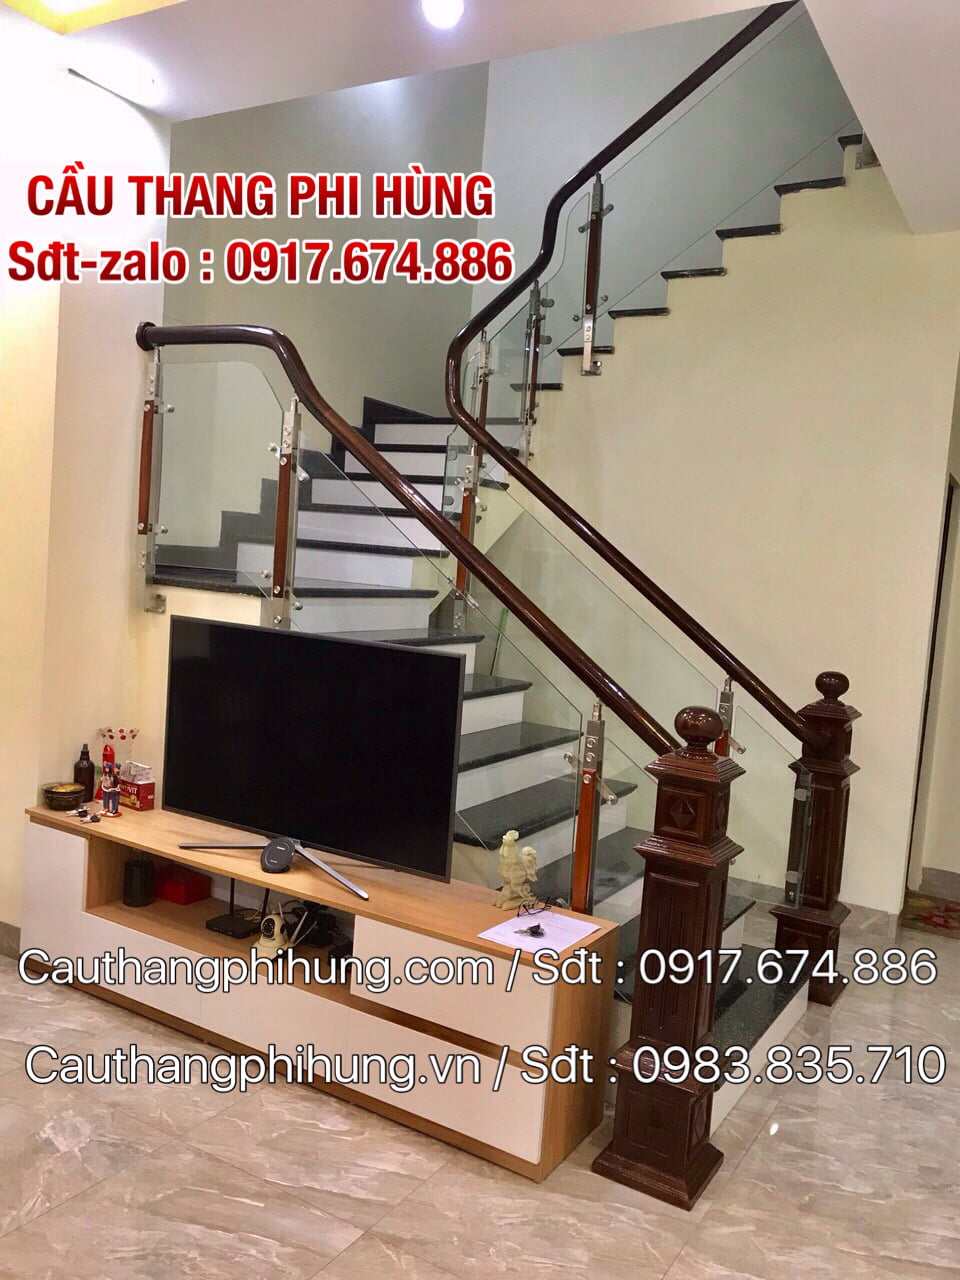 Các mẫu cầu thang lan can kính tay vịn gỗ ở Hà Nội, Báo giá cầu ...